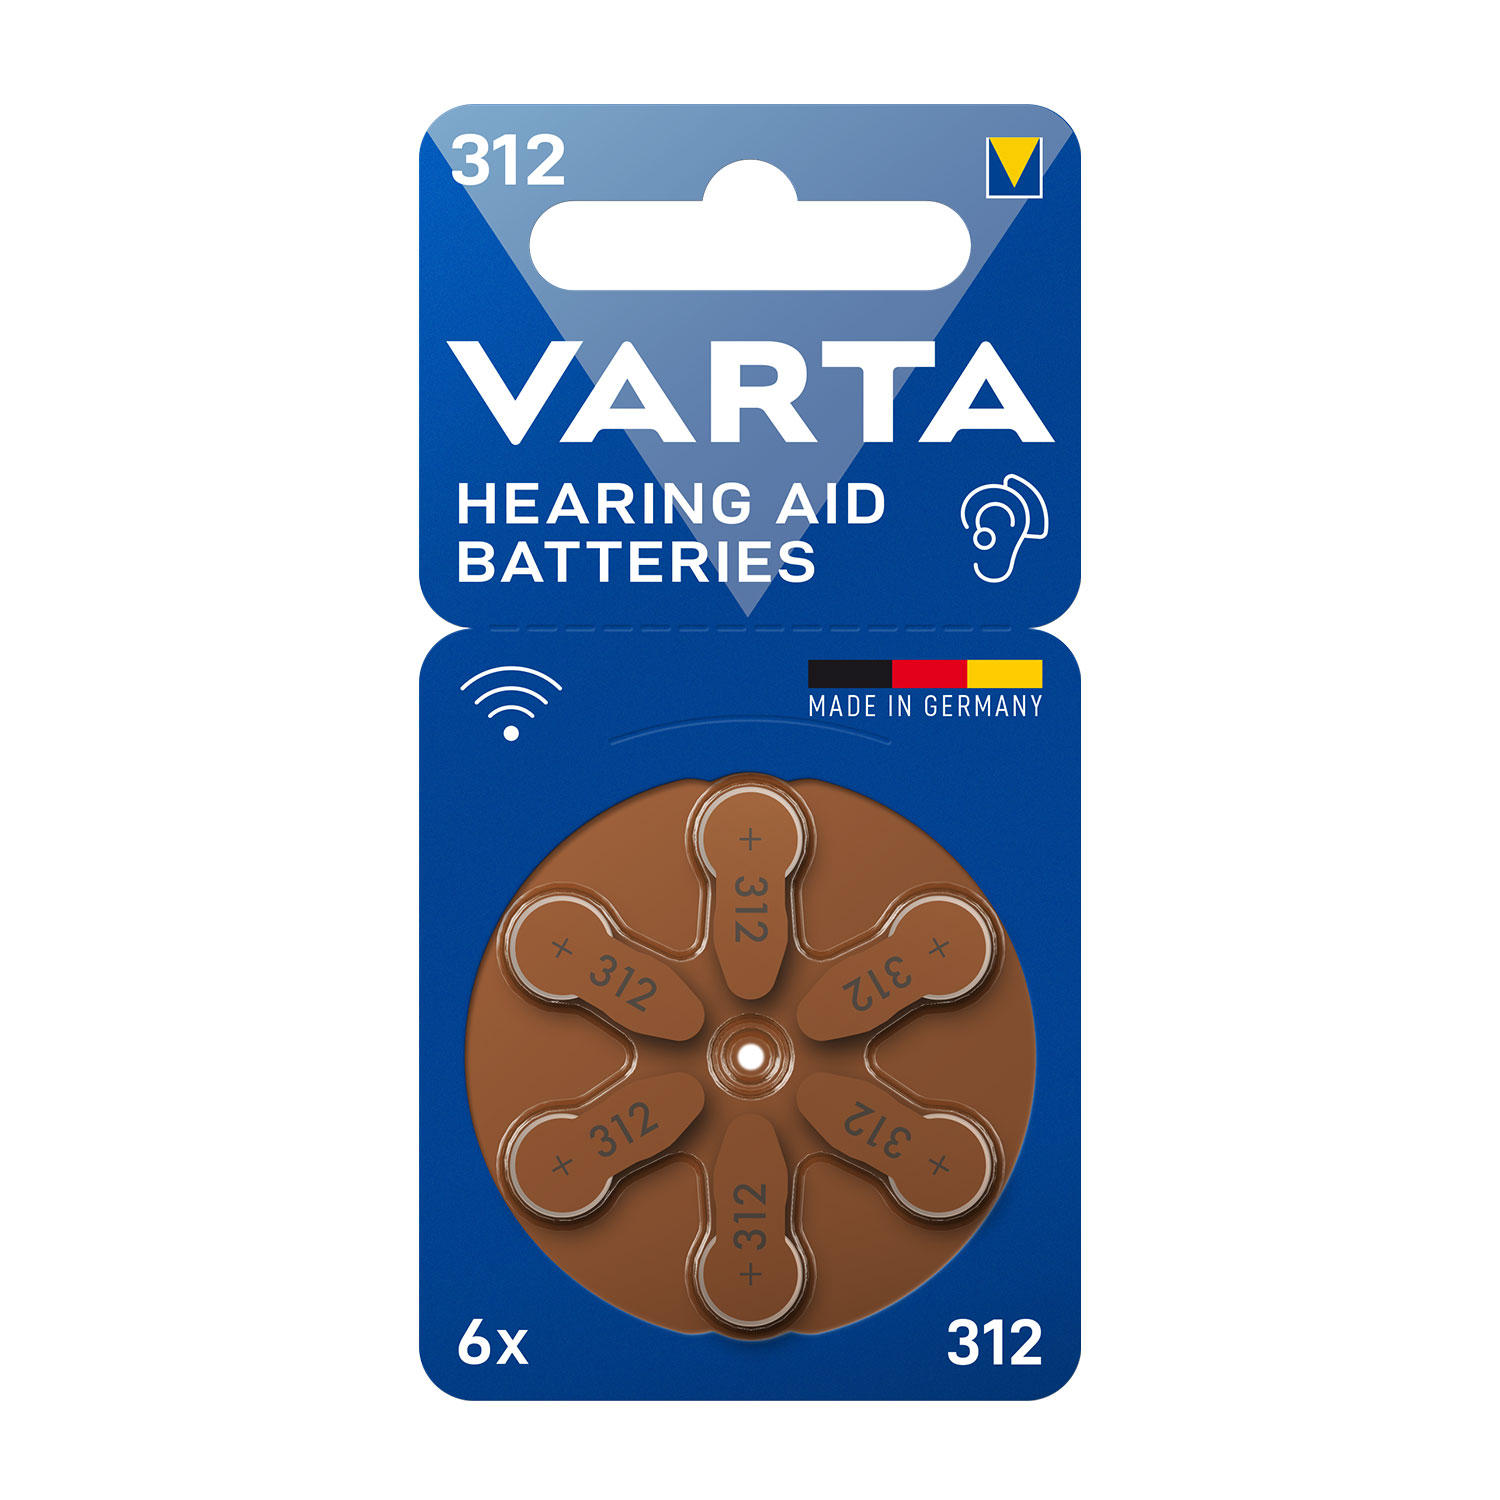 Varta 312 hearing aid battery